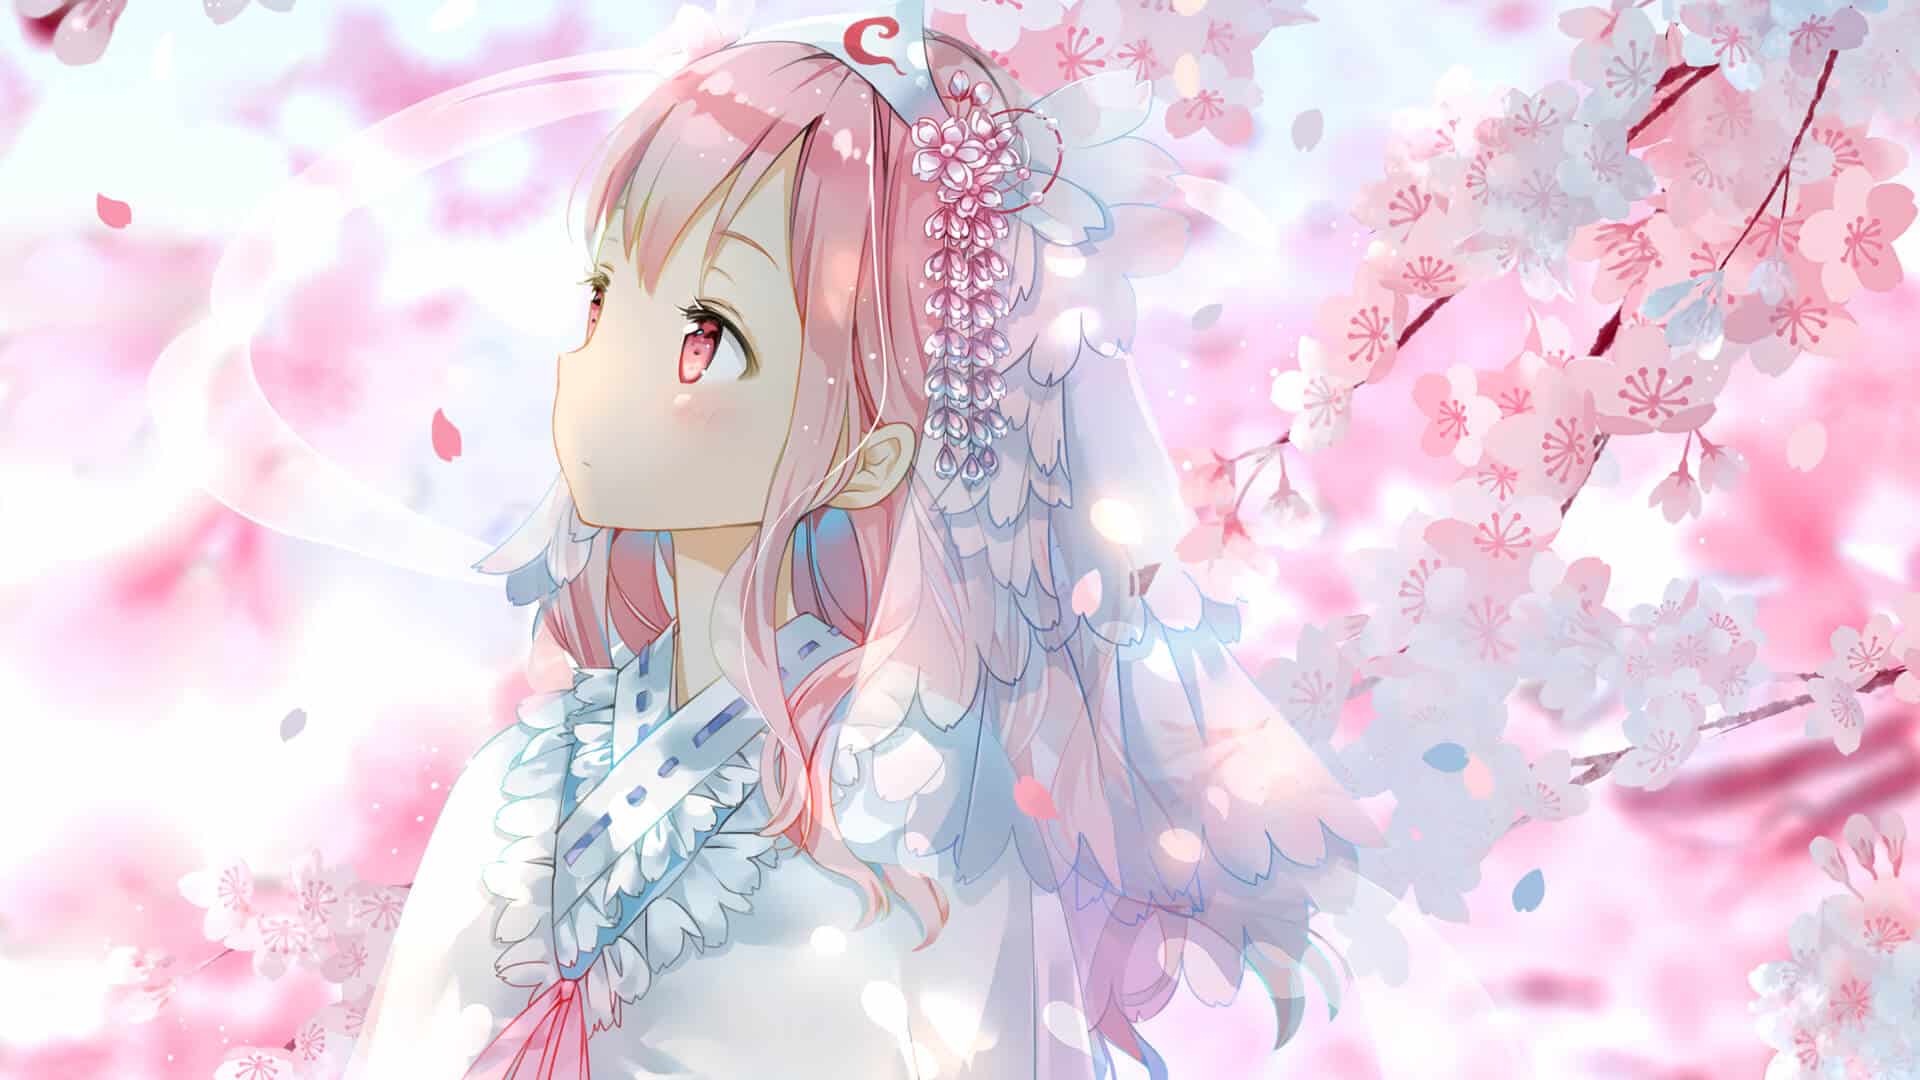 Chia sẻ Hình ảnh nền Anime cô nàng xinh rất đẹp mặt mũi hoa anh đào